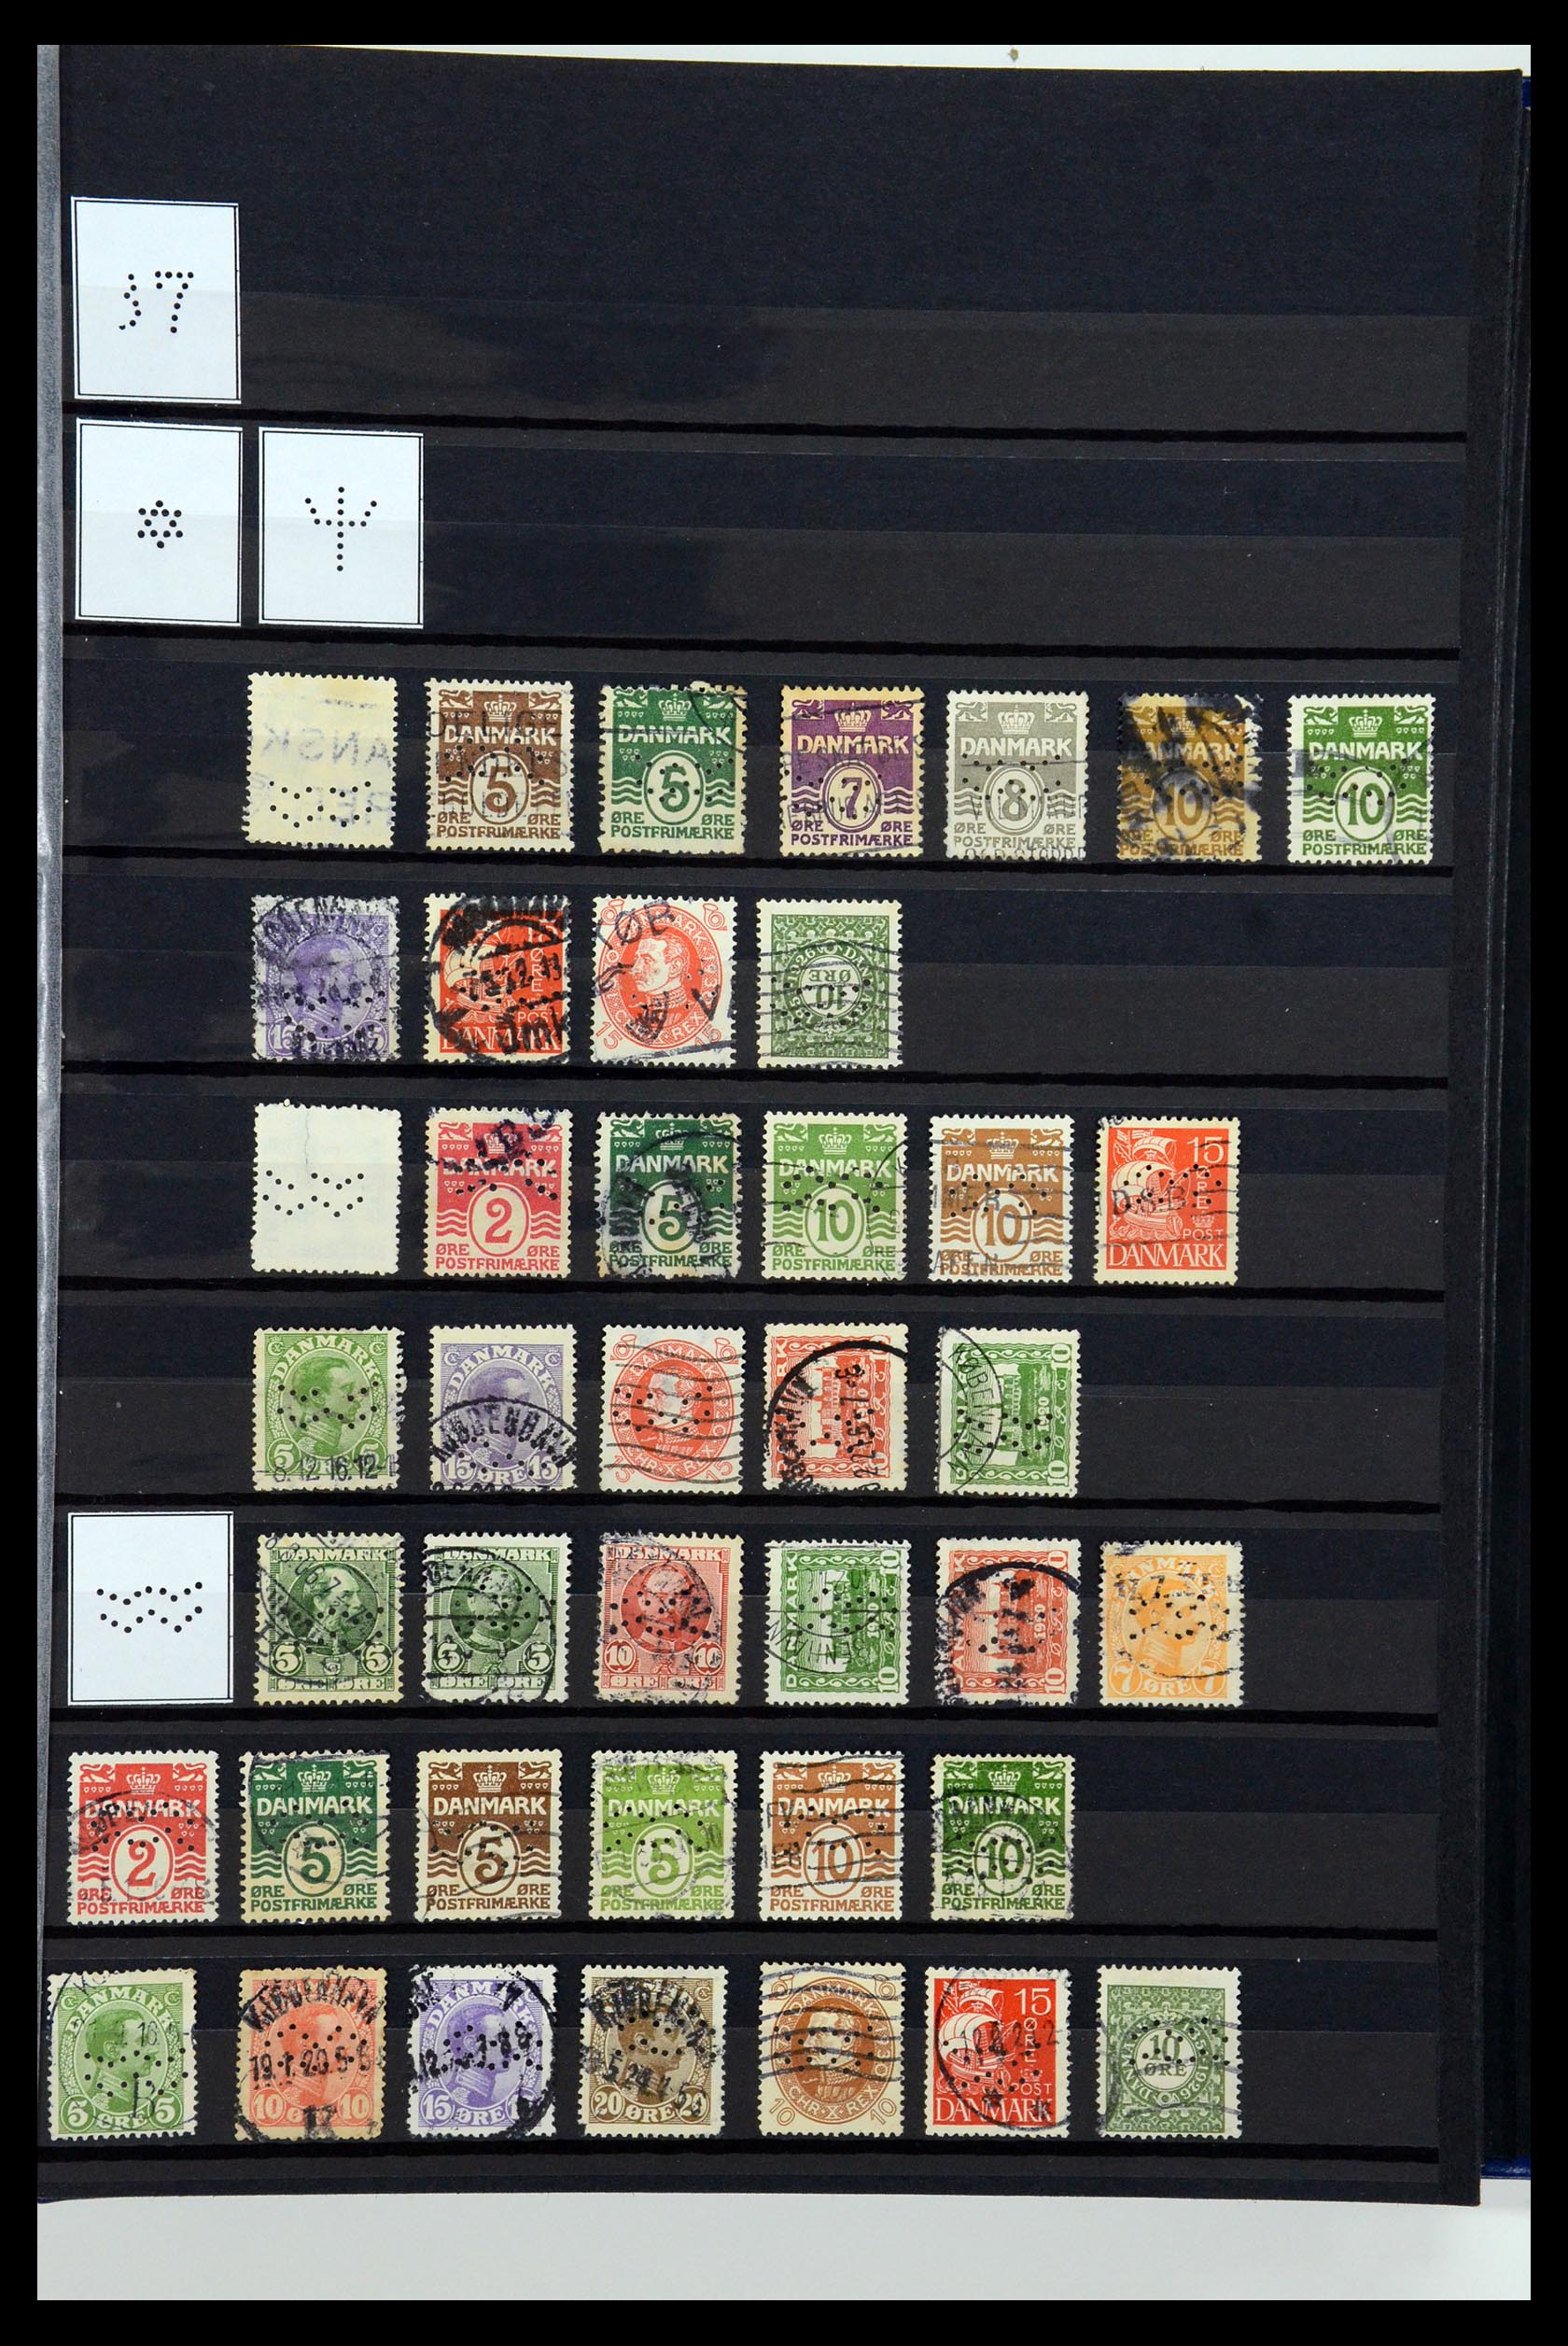 36396 229 - Postzegelverzameling 36396 Denemarken perfins.